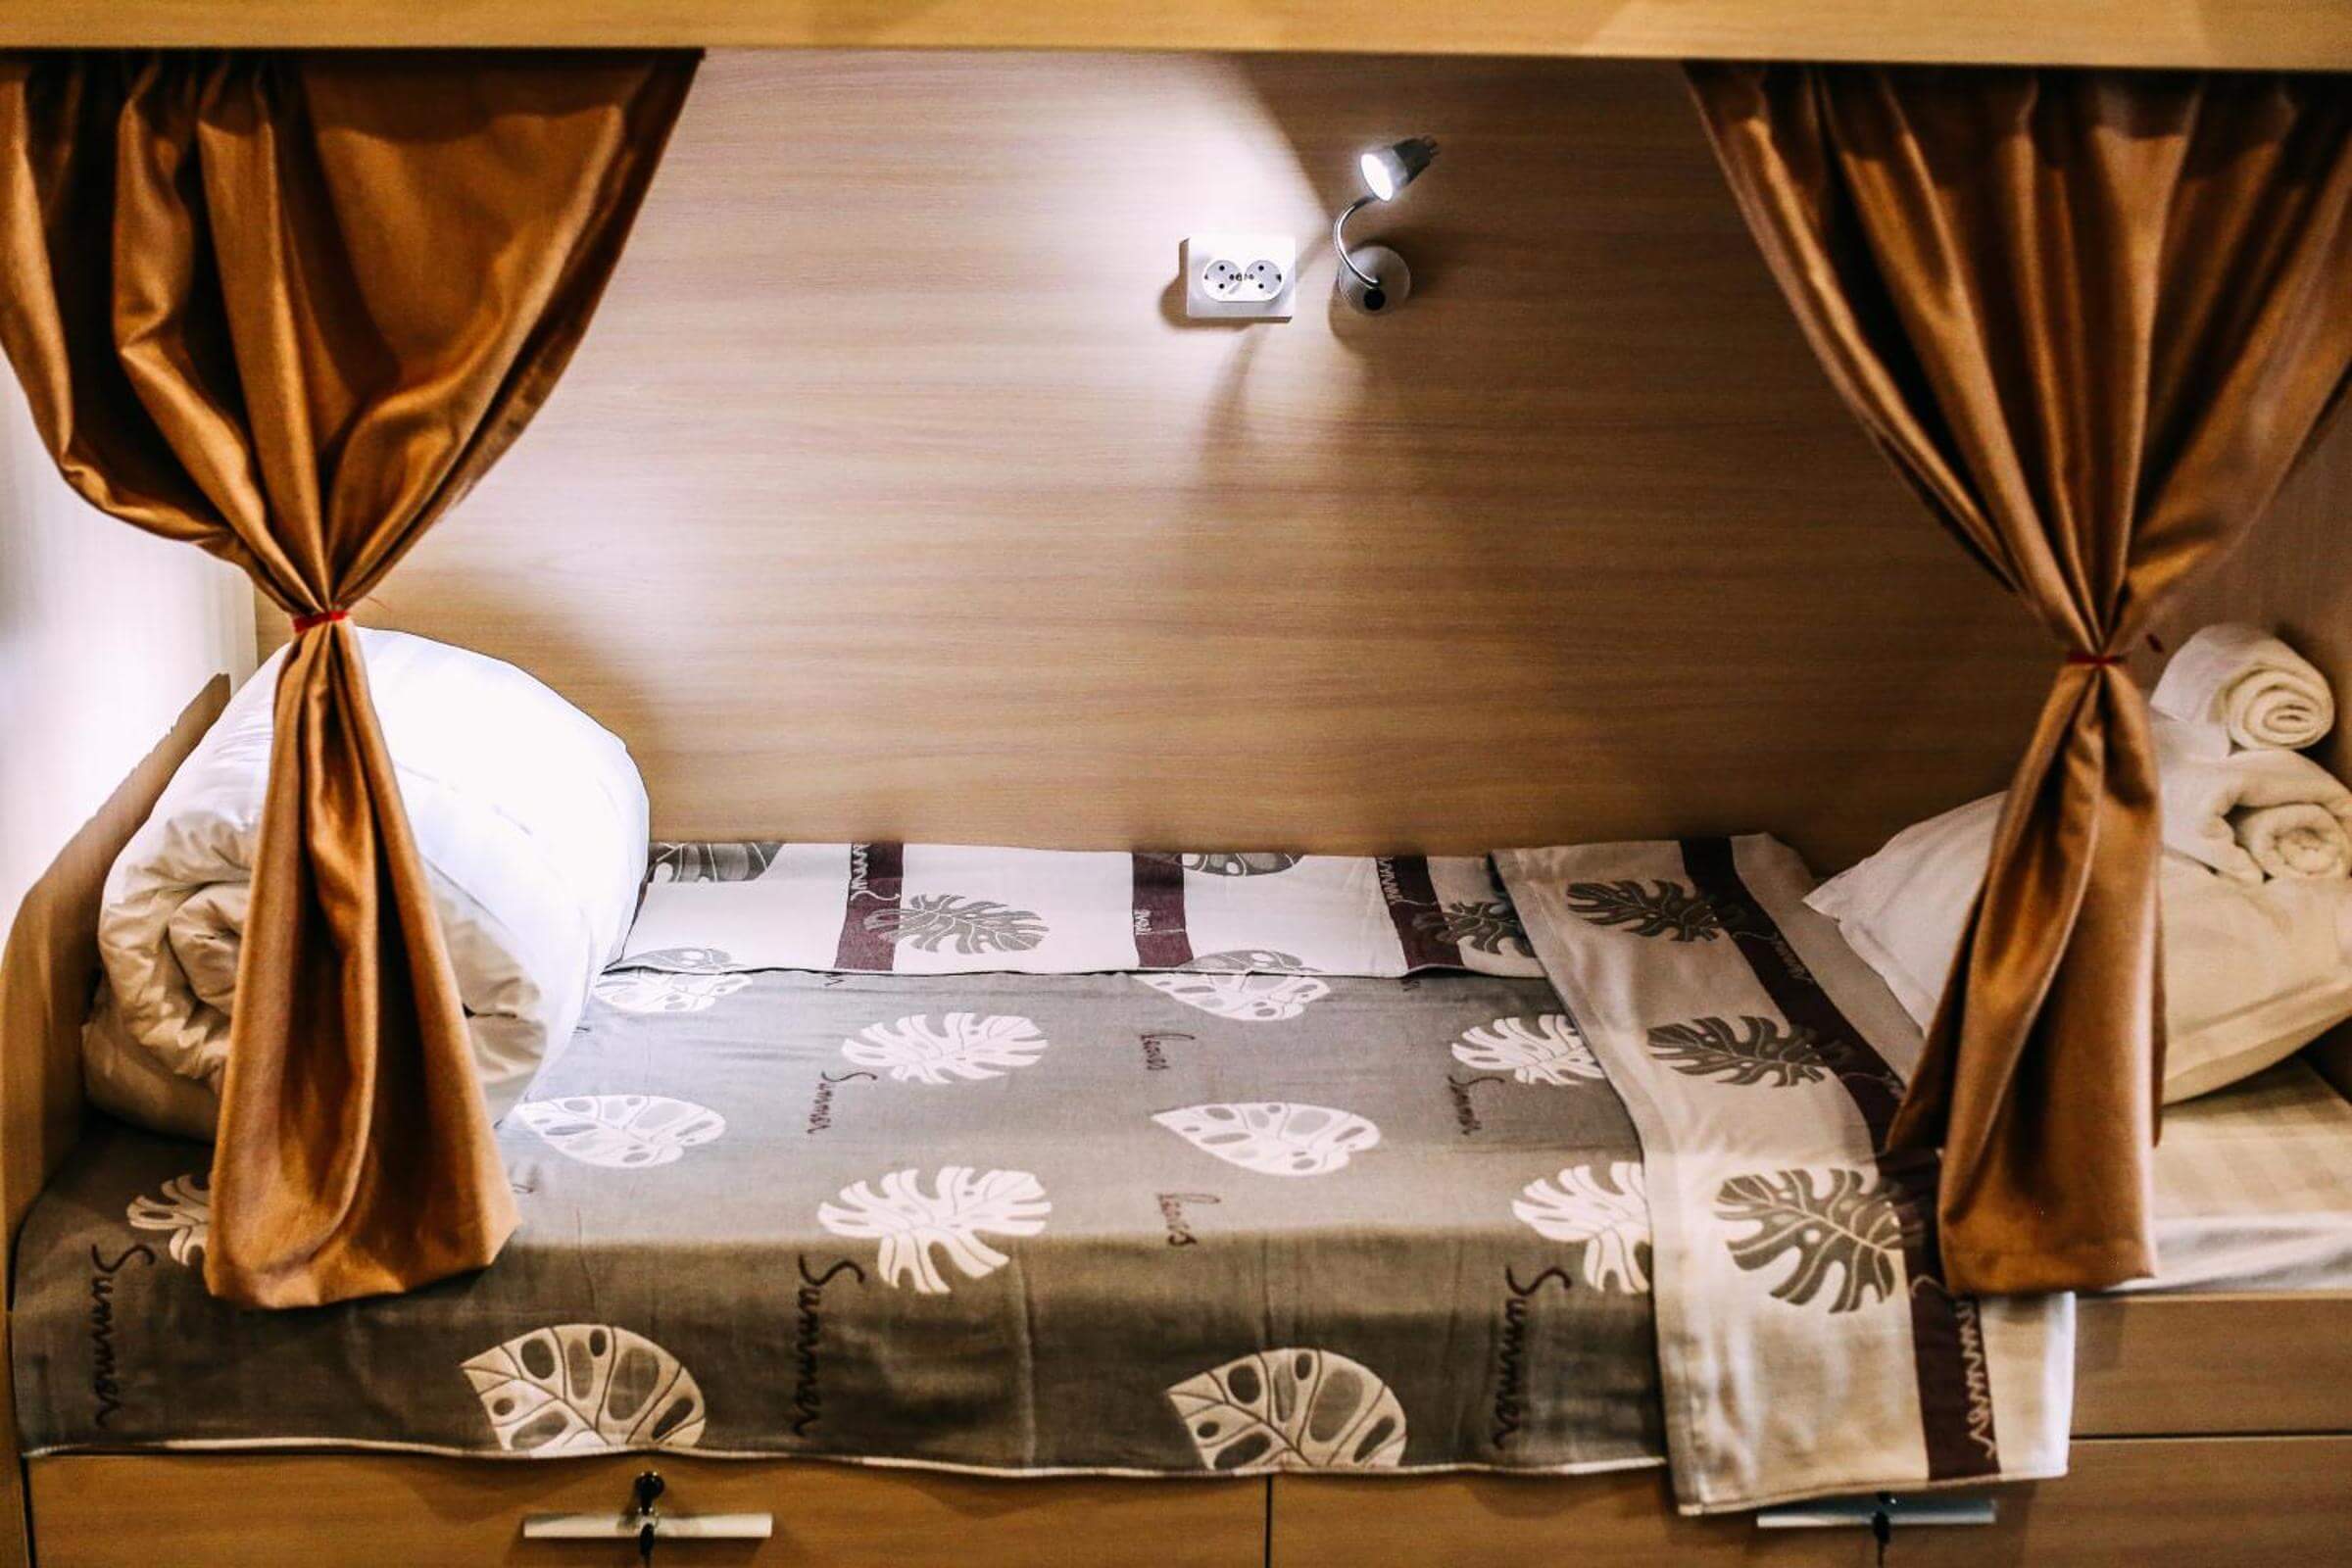 Пример спального места. Застеленная кровать, покрывало, полотенца.